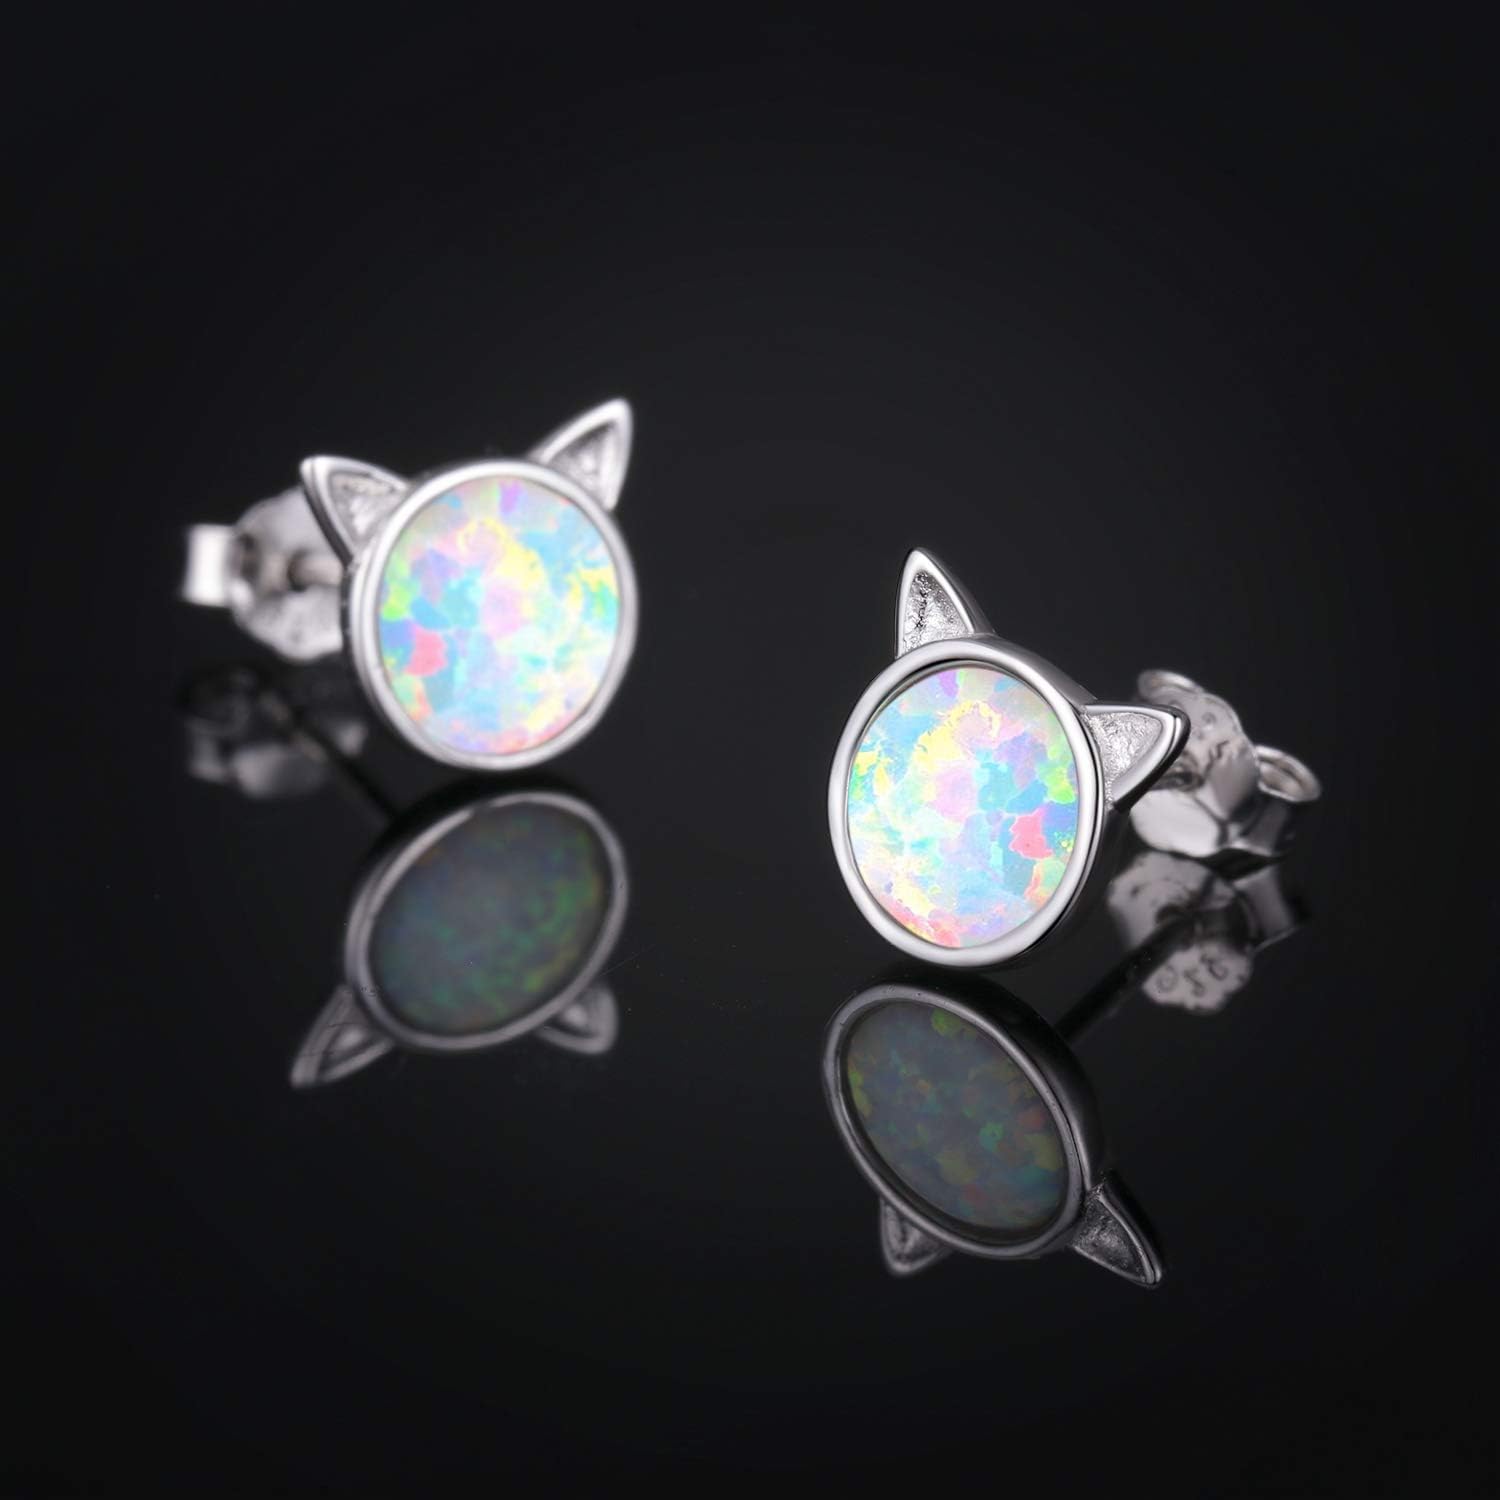 Cat/Mouse/Owl Opal Earrings Sterling Silver Cute Animal Opal Stud Earrings Hypoallergenic Opal Earrings Opal Jewelry Gifts Graduation Gifts for Women Girls